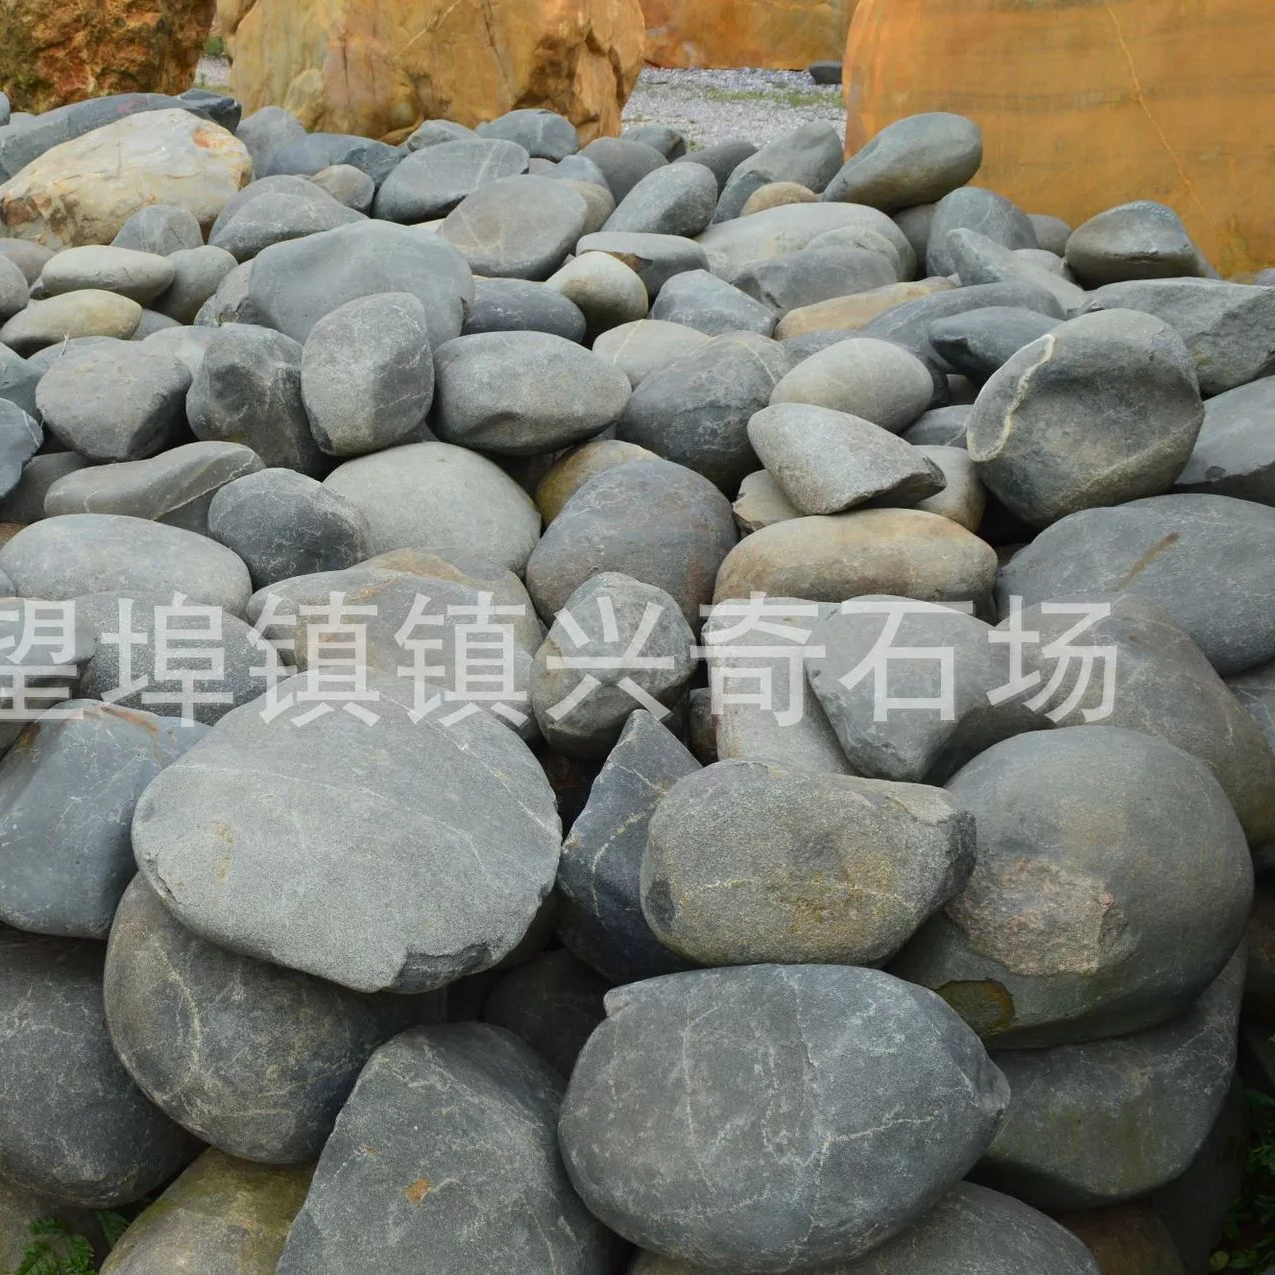 清远市青石厂家供应青石 直销青石 假山石 自然景观石 驳岸景石